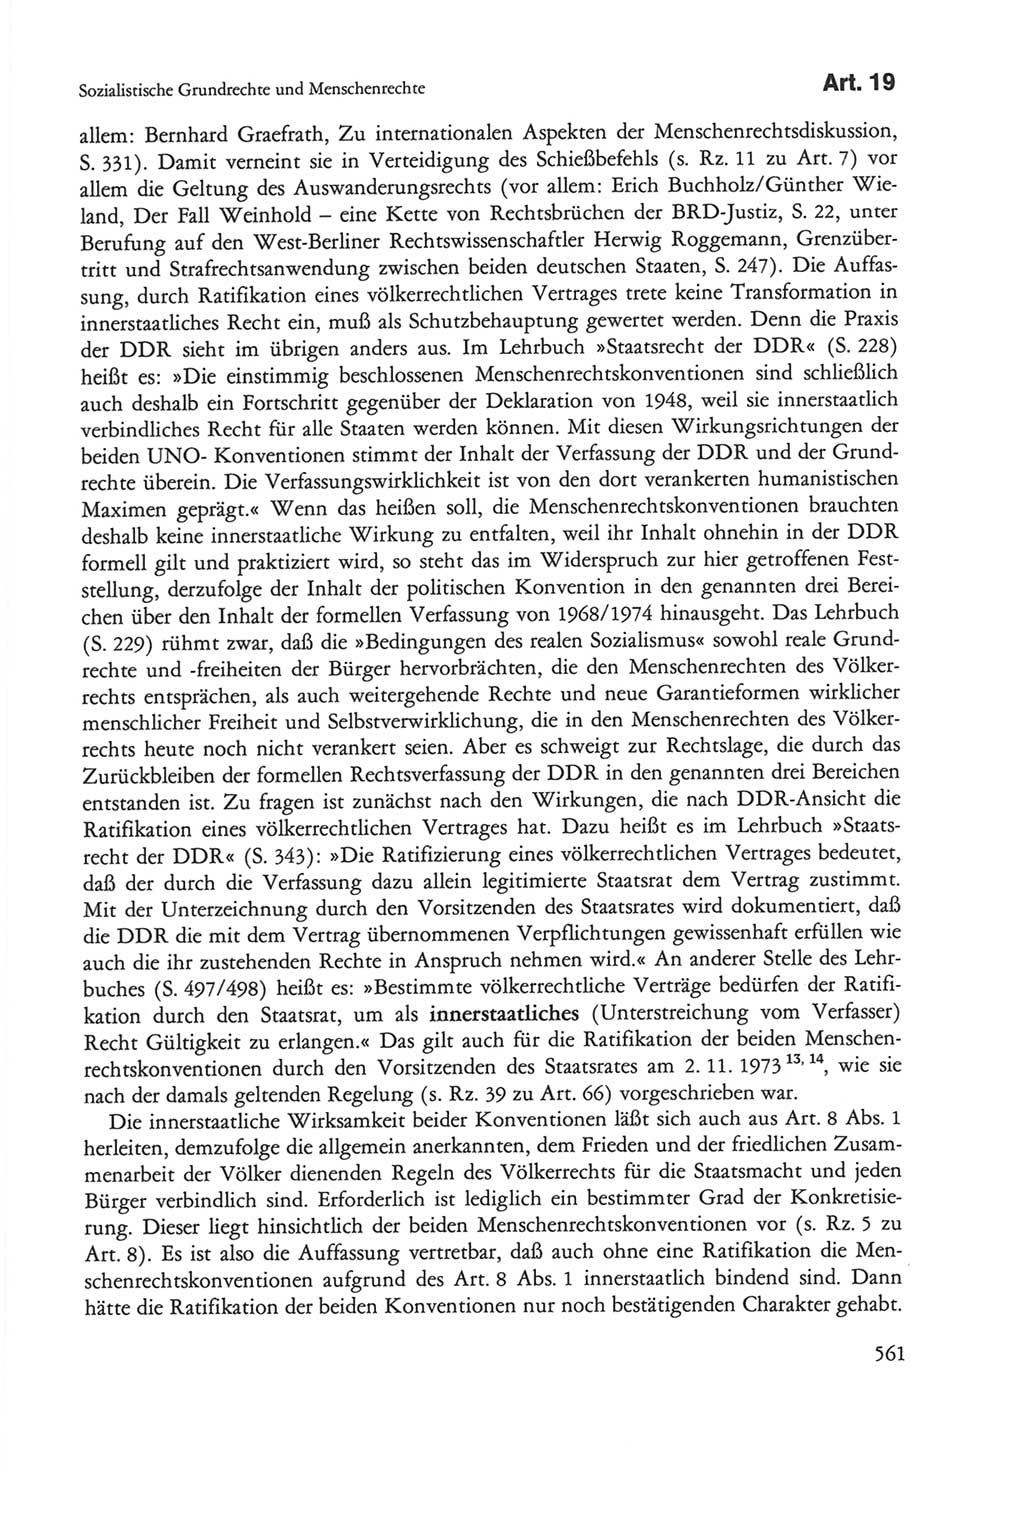 Die sozialistische Verfassung der Deutschen Demokratischen Republik (DDR), Kommentar 1982, Seite 561 (Soz. Verf. DDR Komm. 1982, S. 561)